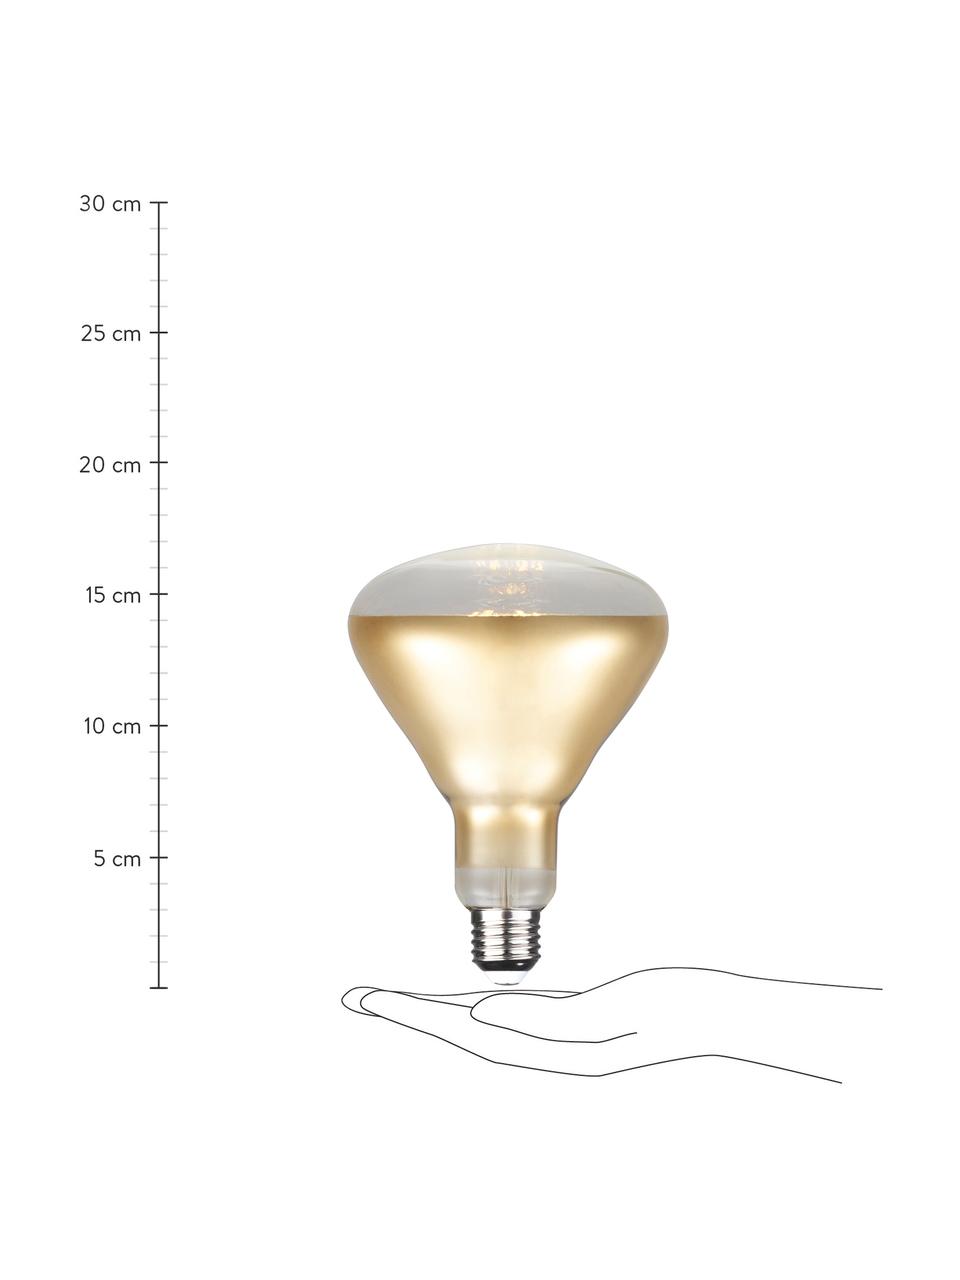 Ampoule (E27 - 550 lm) blanc chaud à intensité variable, 1 pièce, Couleur dorée